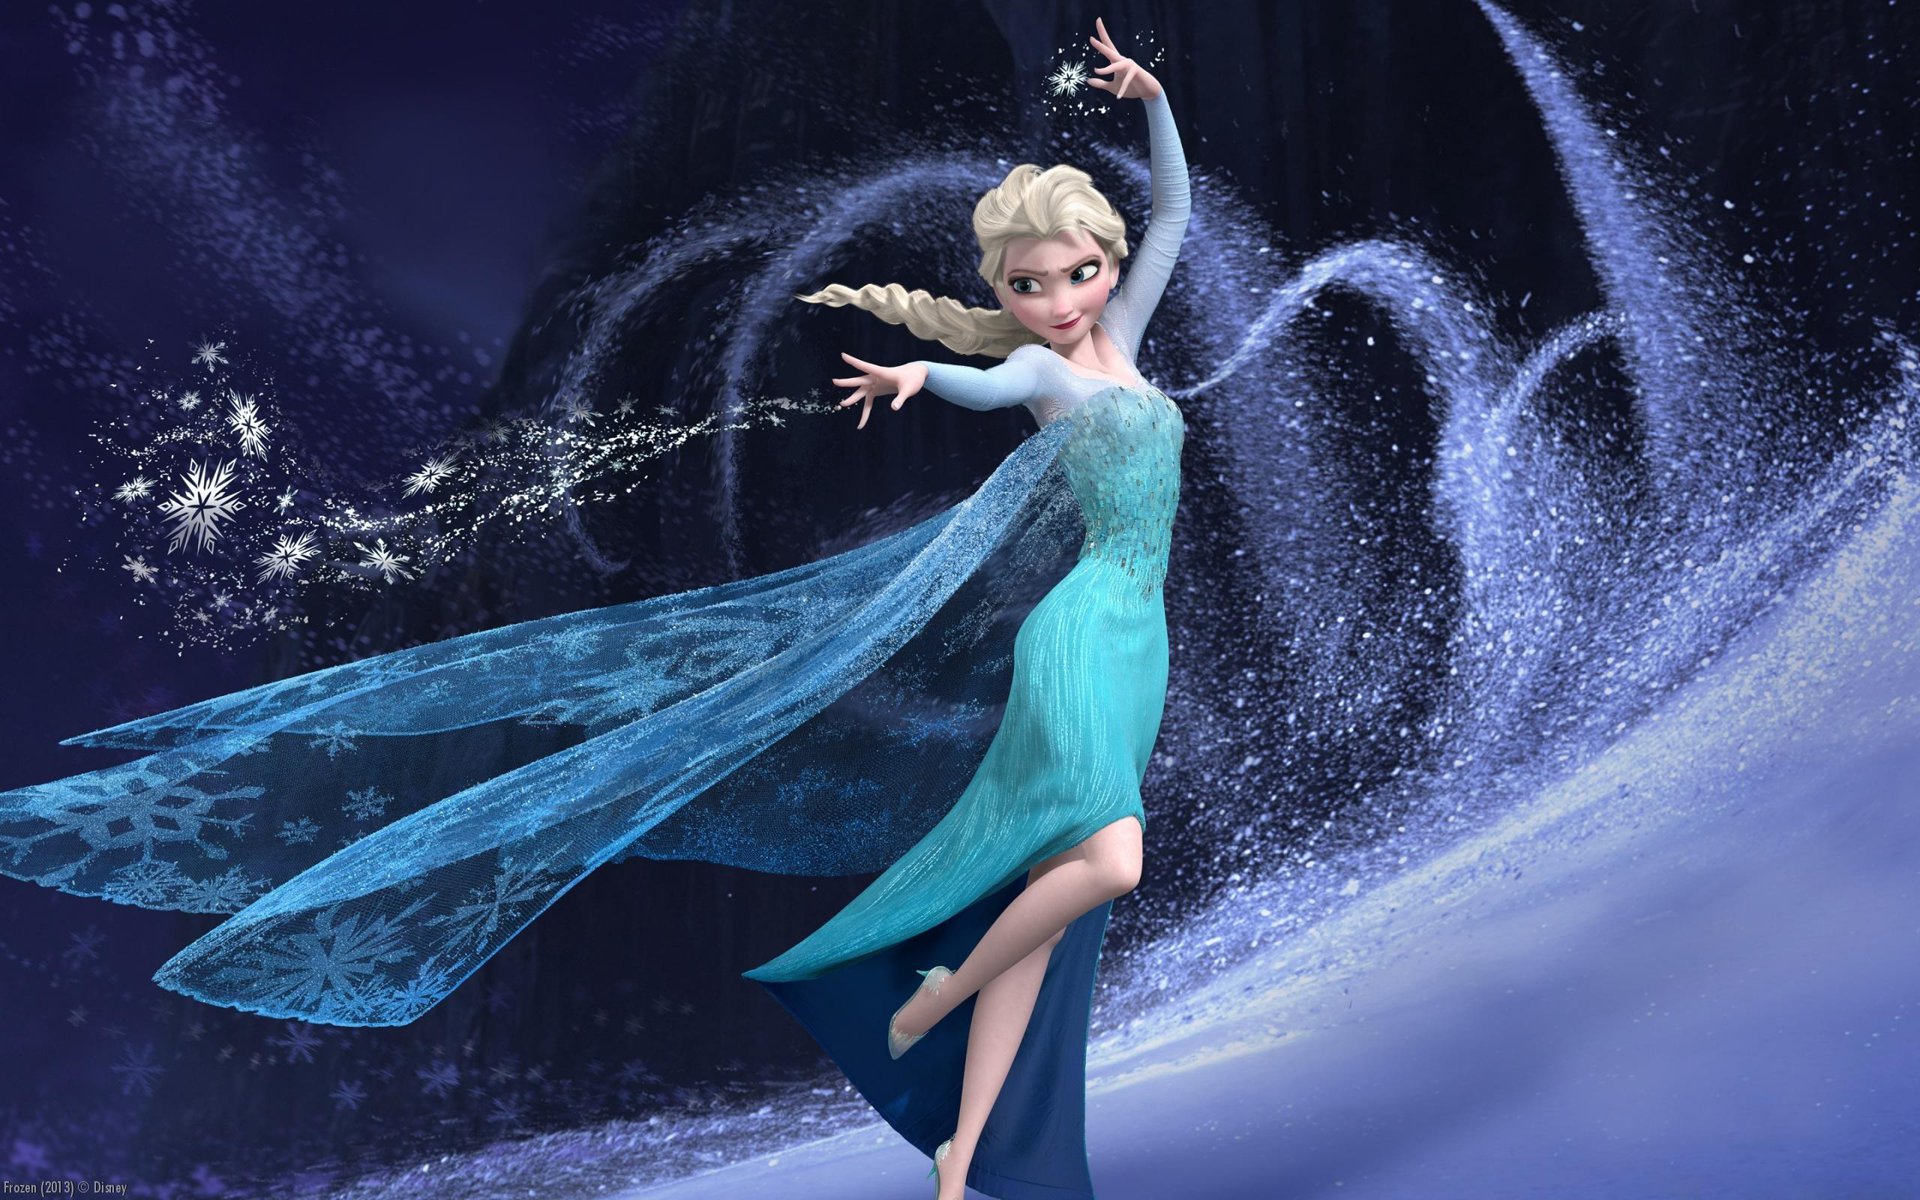 Tải ảnh nền công chúa Elsa full hd